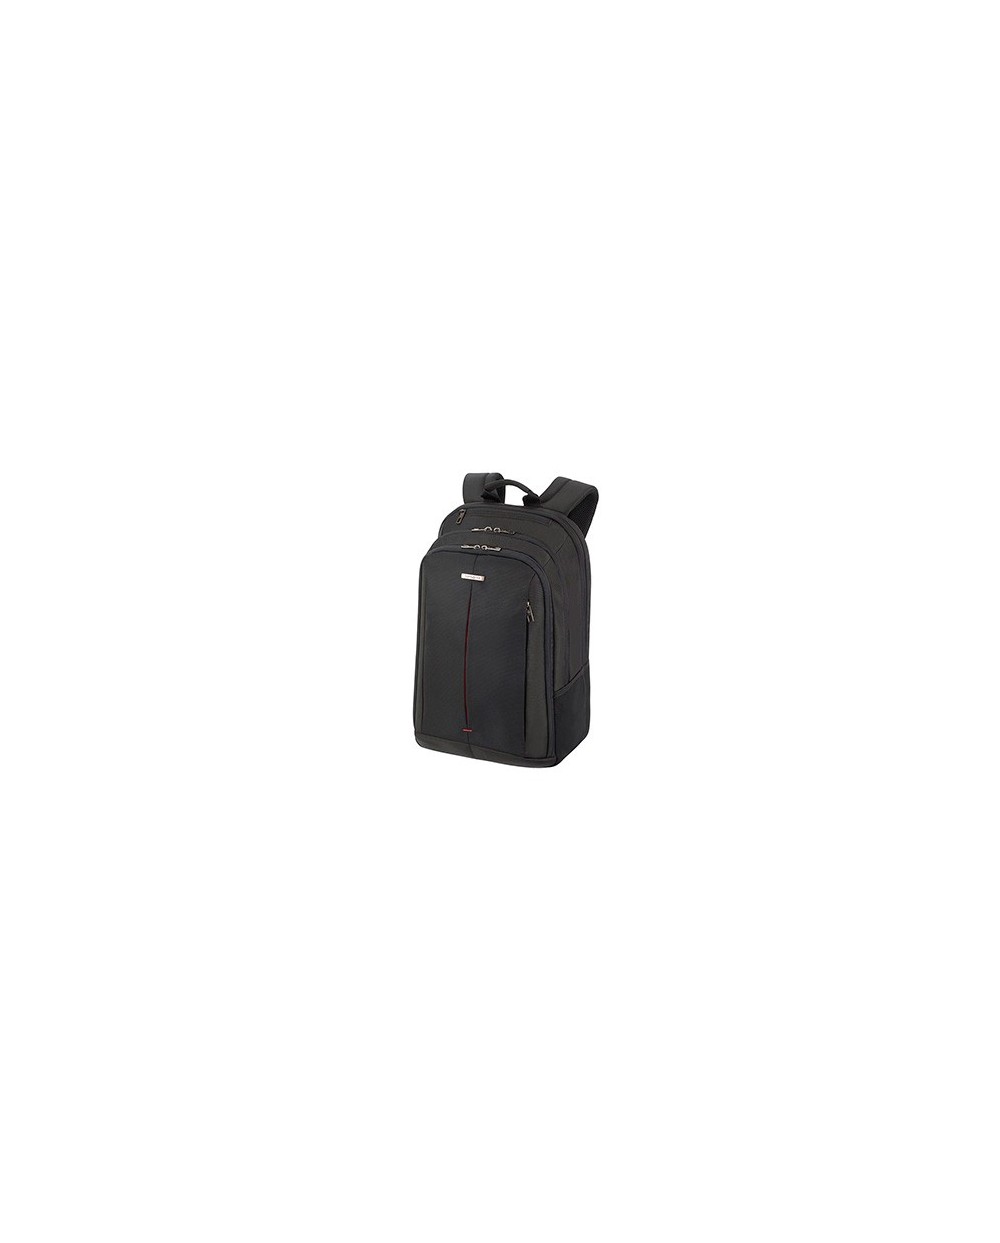 Mochila samsonite guardit 20 para portatil de 173 color negro 205x320x480 mm